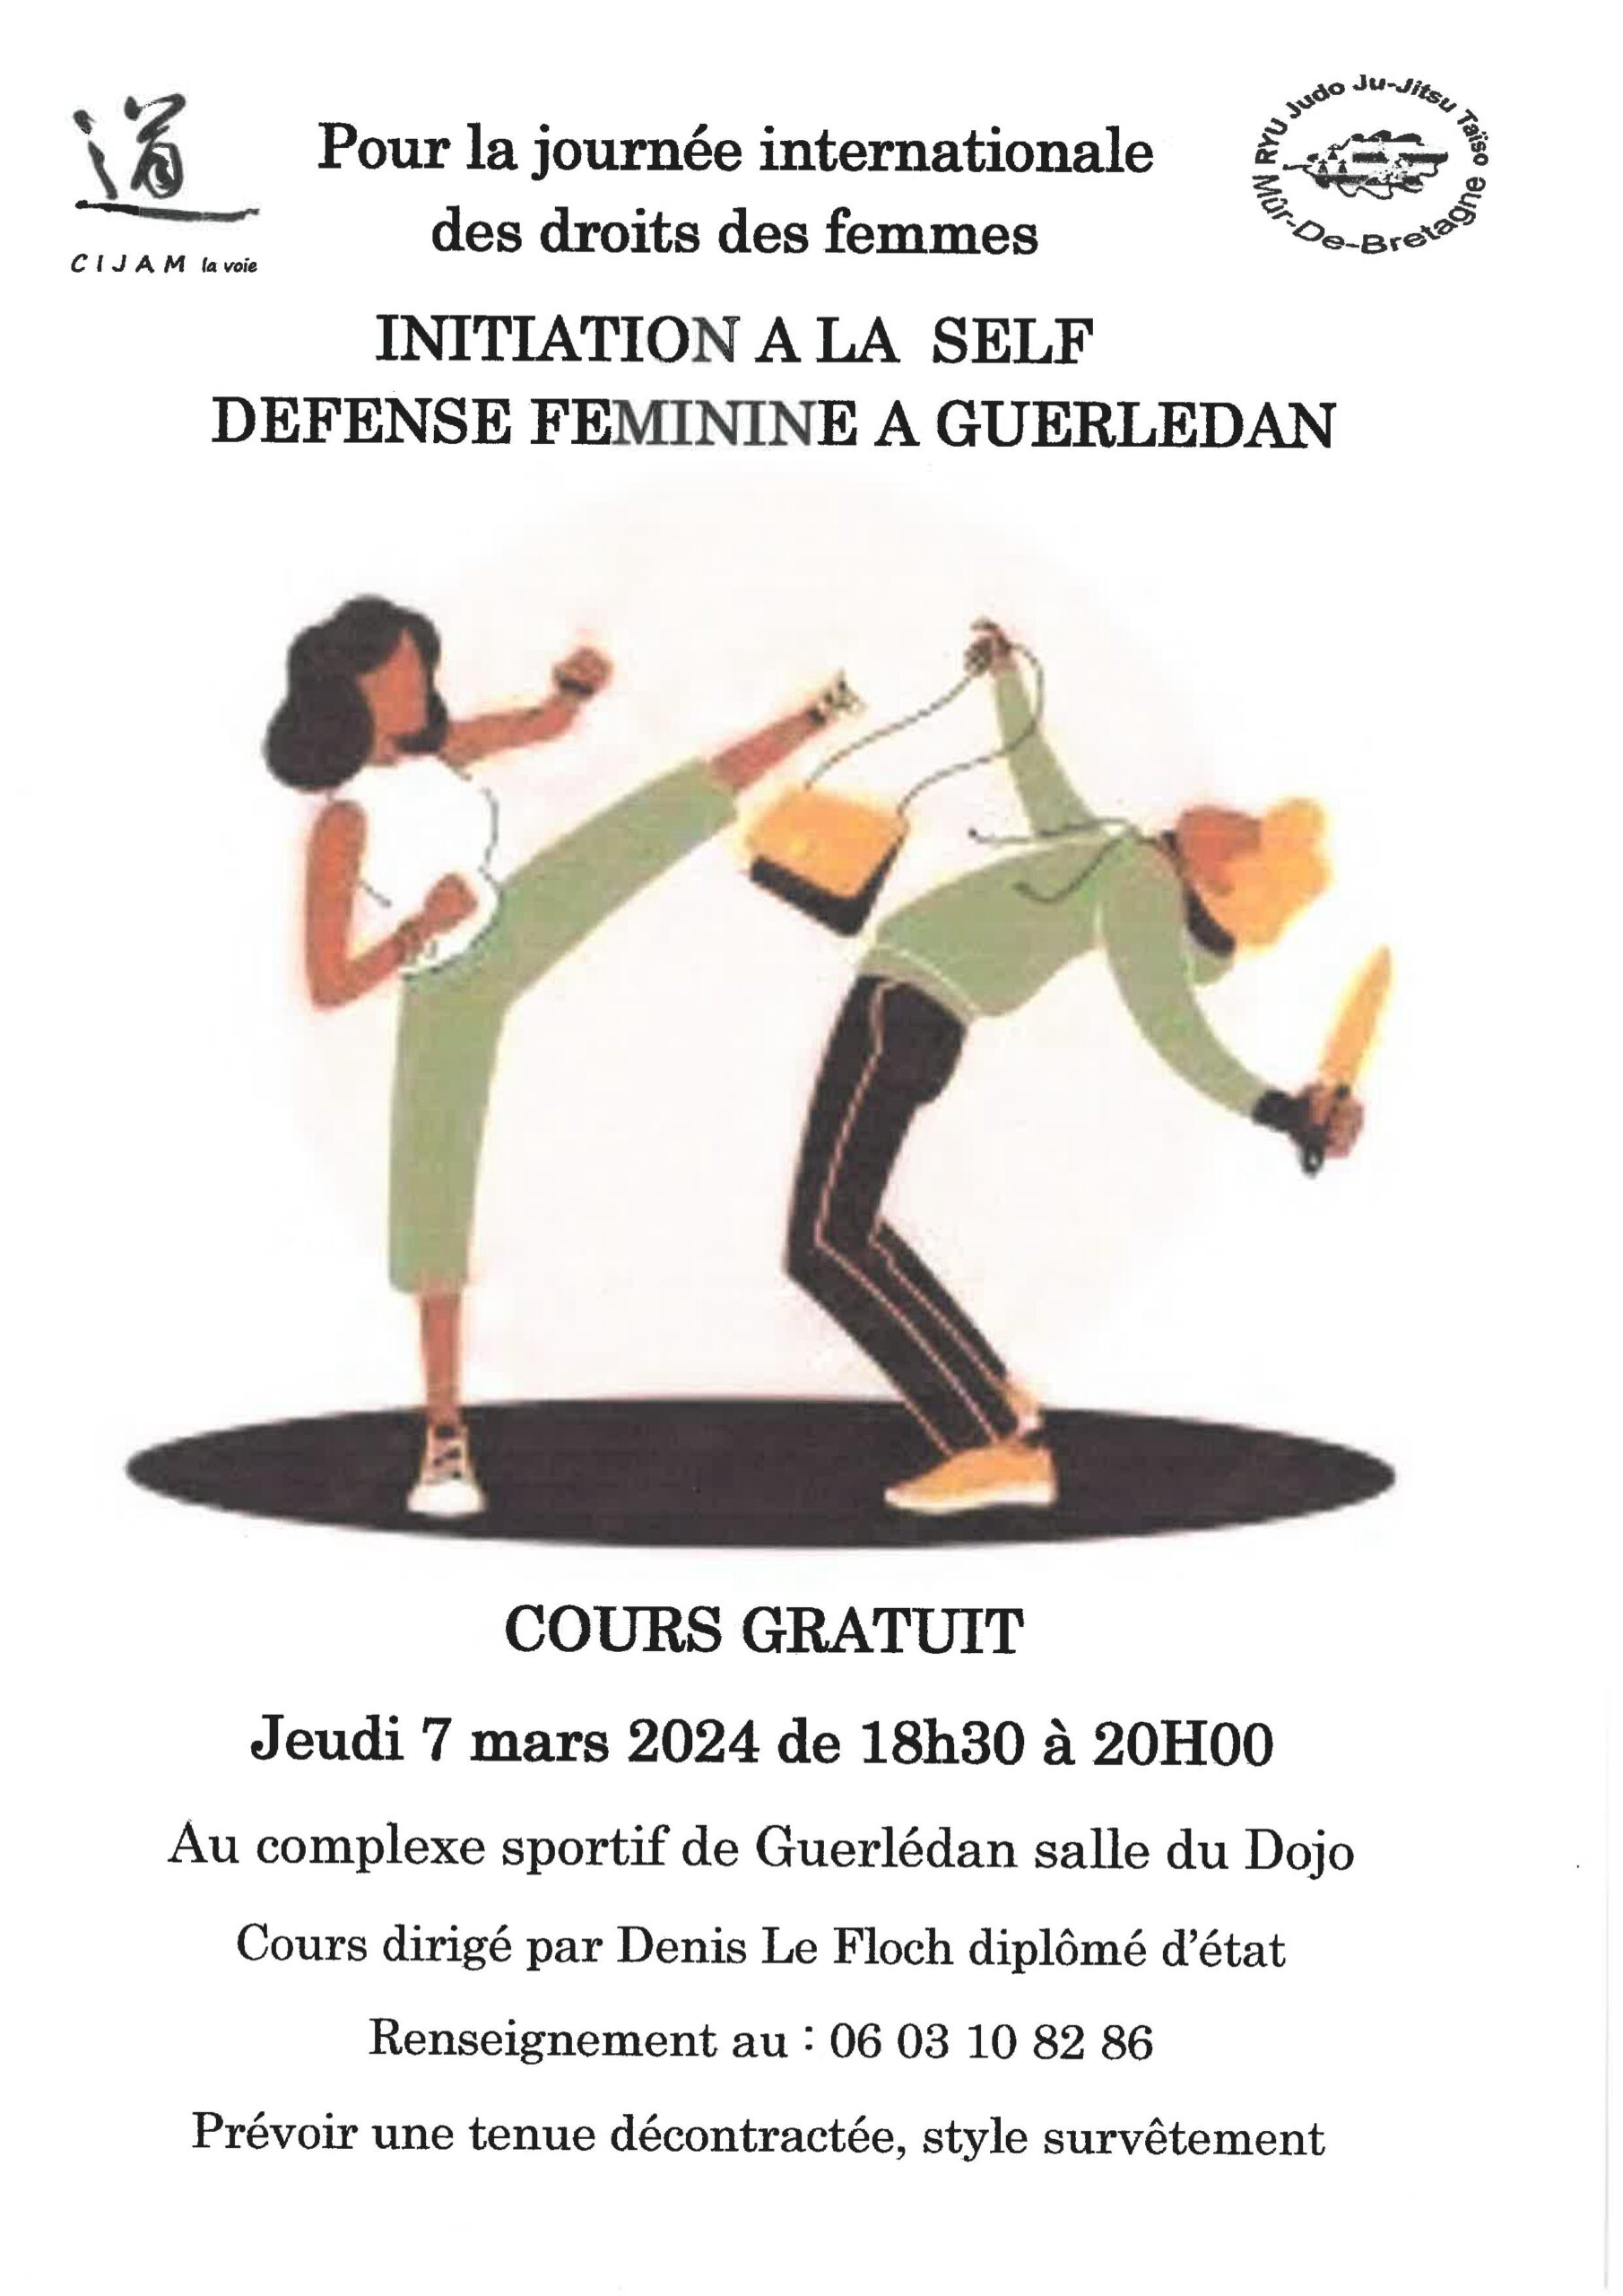 Initiation à la self défense féminine à Guerlédan